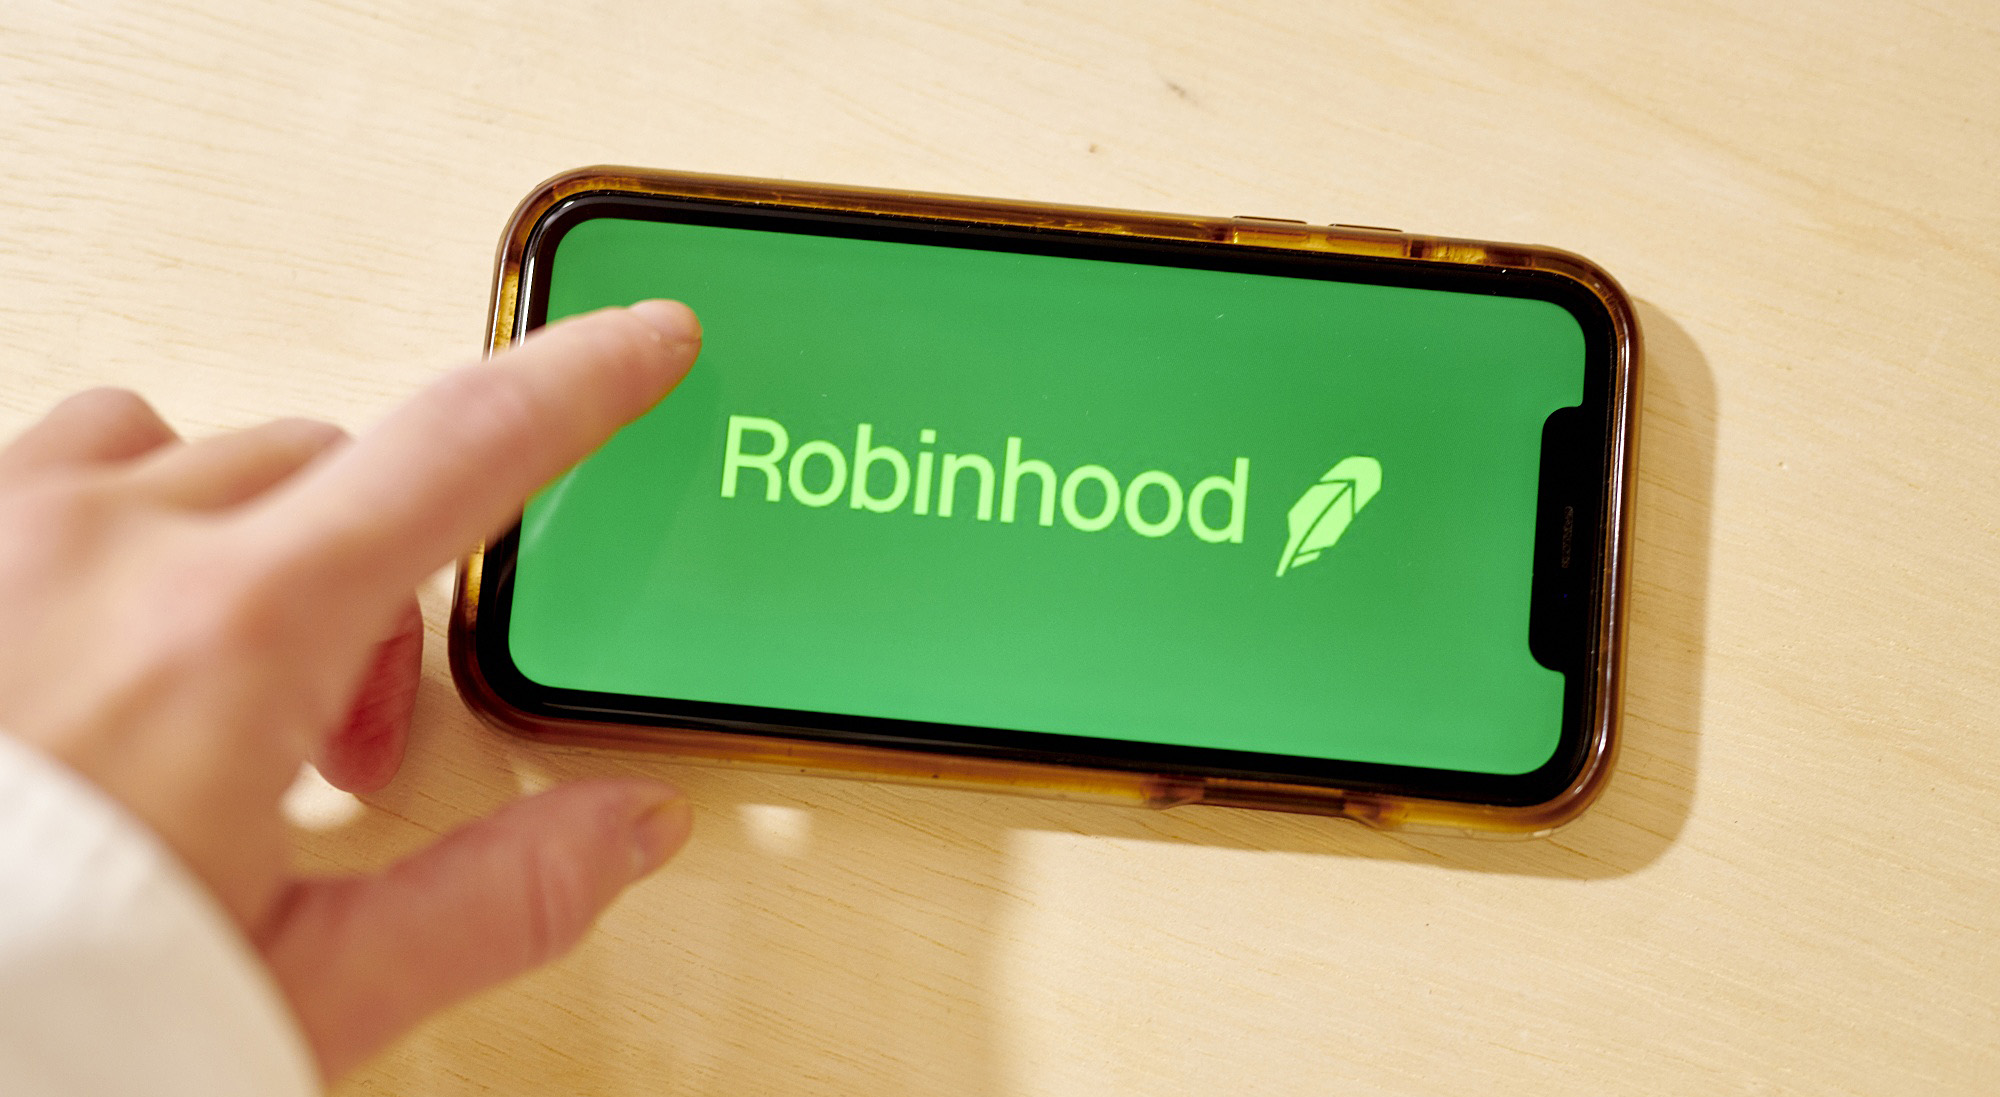 Robinhood Ipo Trading App Plans To Reveal Ipo Filings As Soon As Next Week Bloomberg